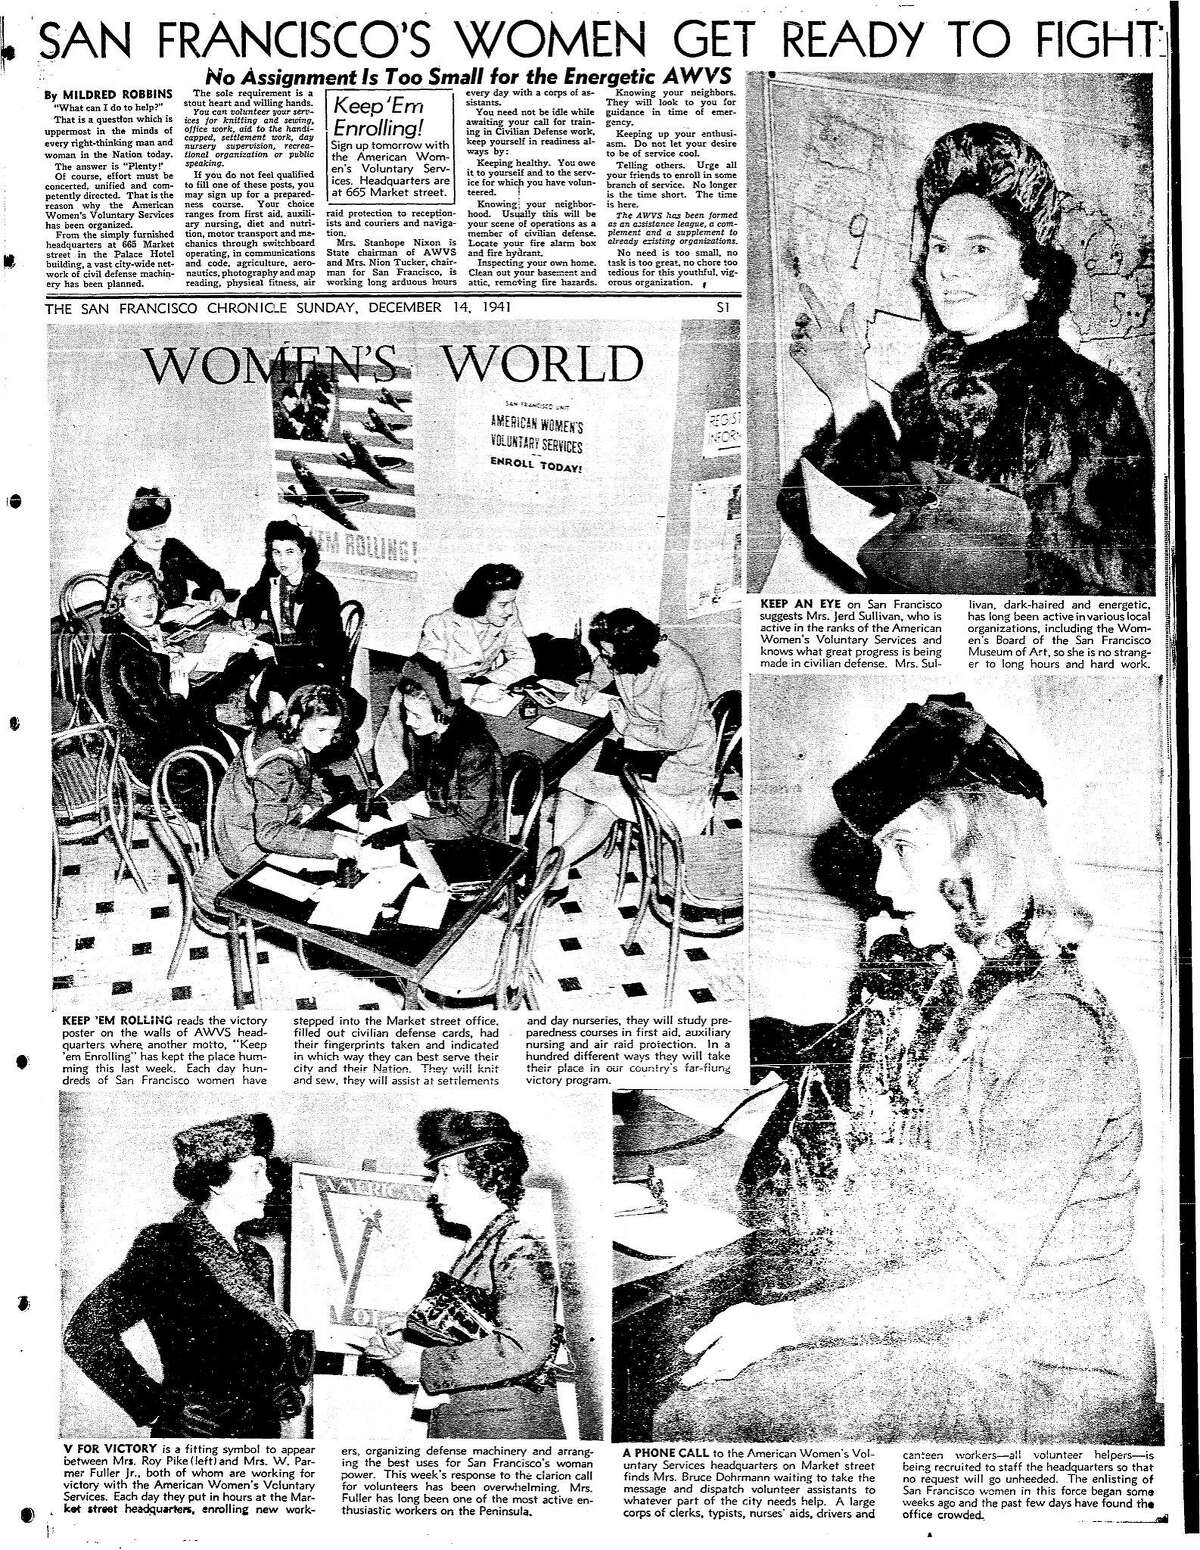 1941年12月14日,纪事报》的一篇文章对各种妇女组织包括AWVS,美国妇女的志愿者服务,准备战争在珍珠港袭击后的日子